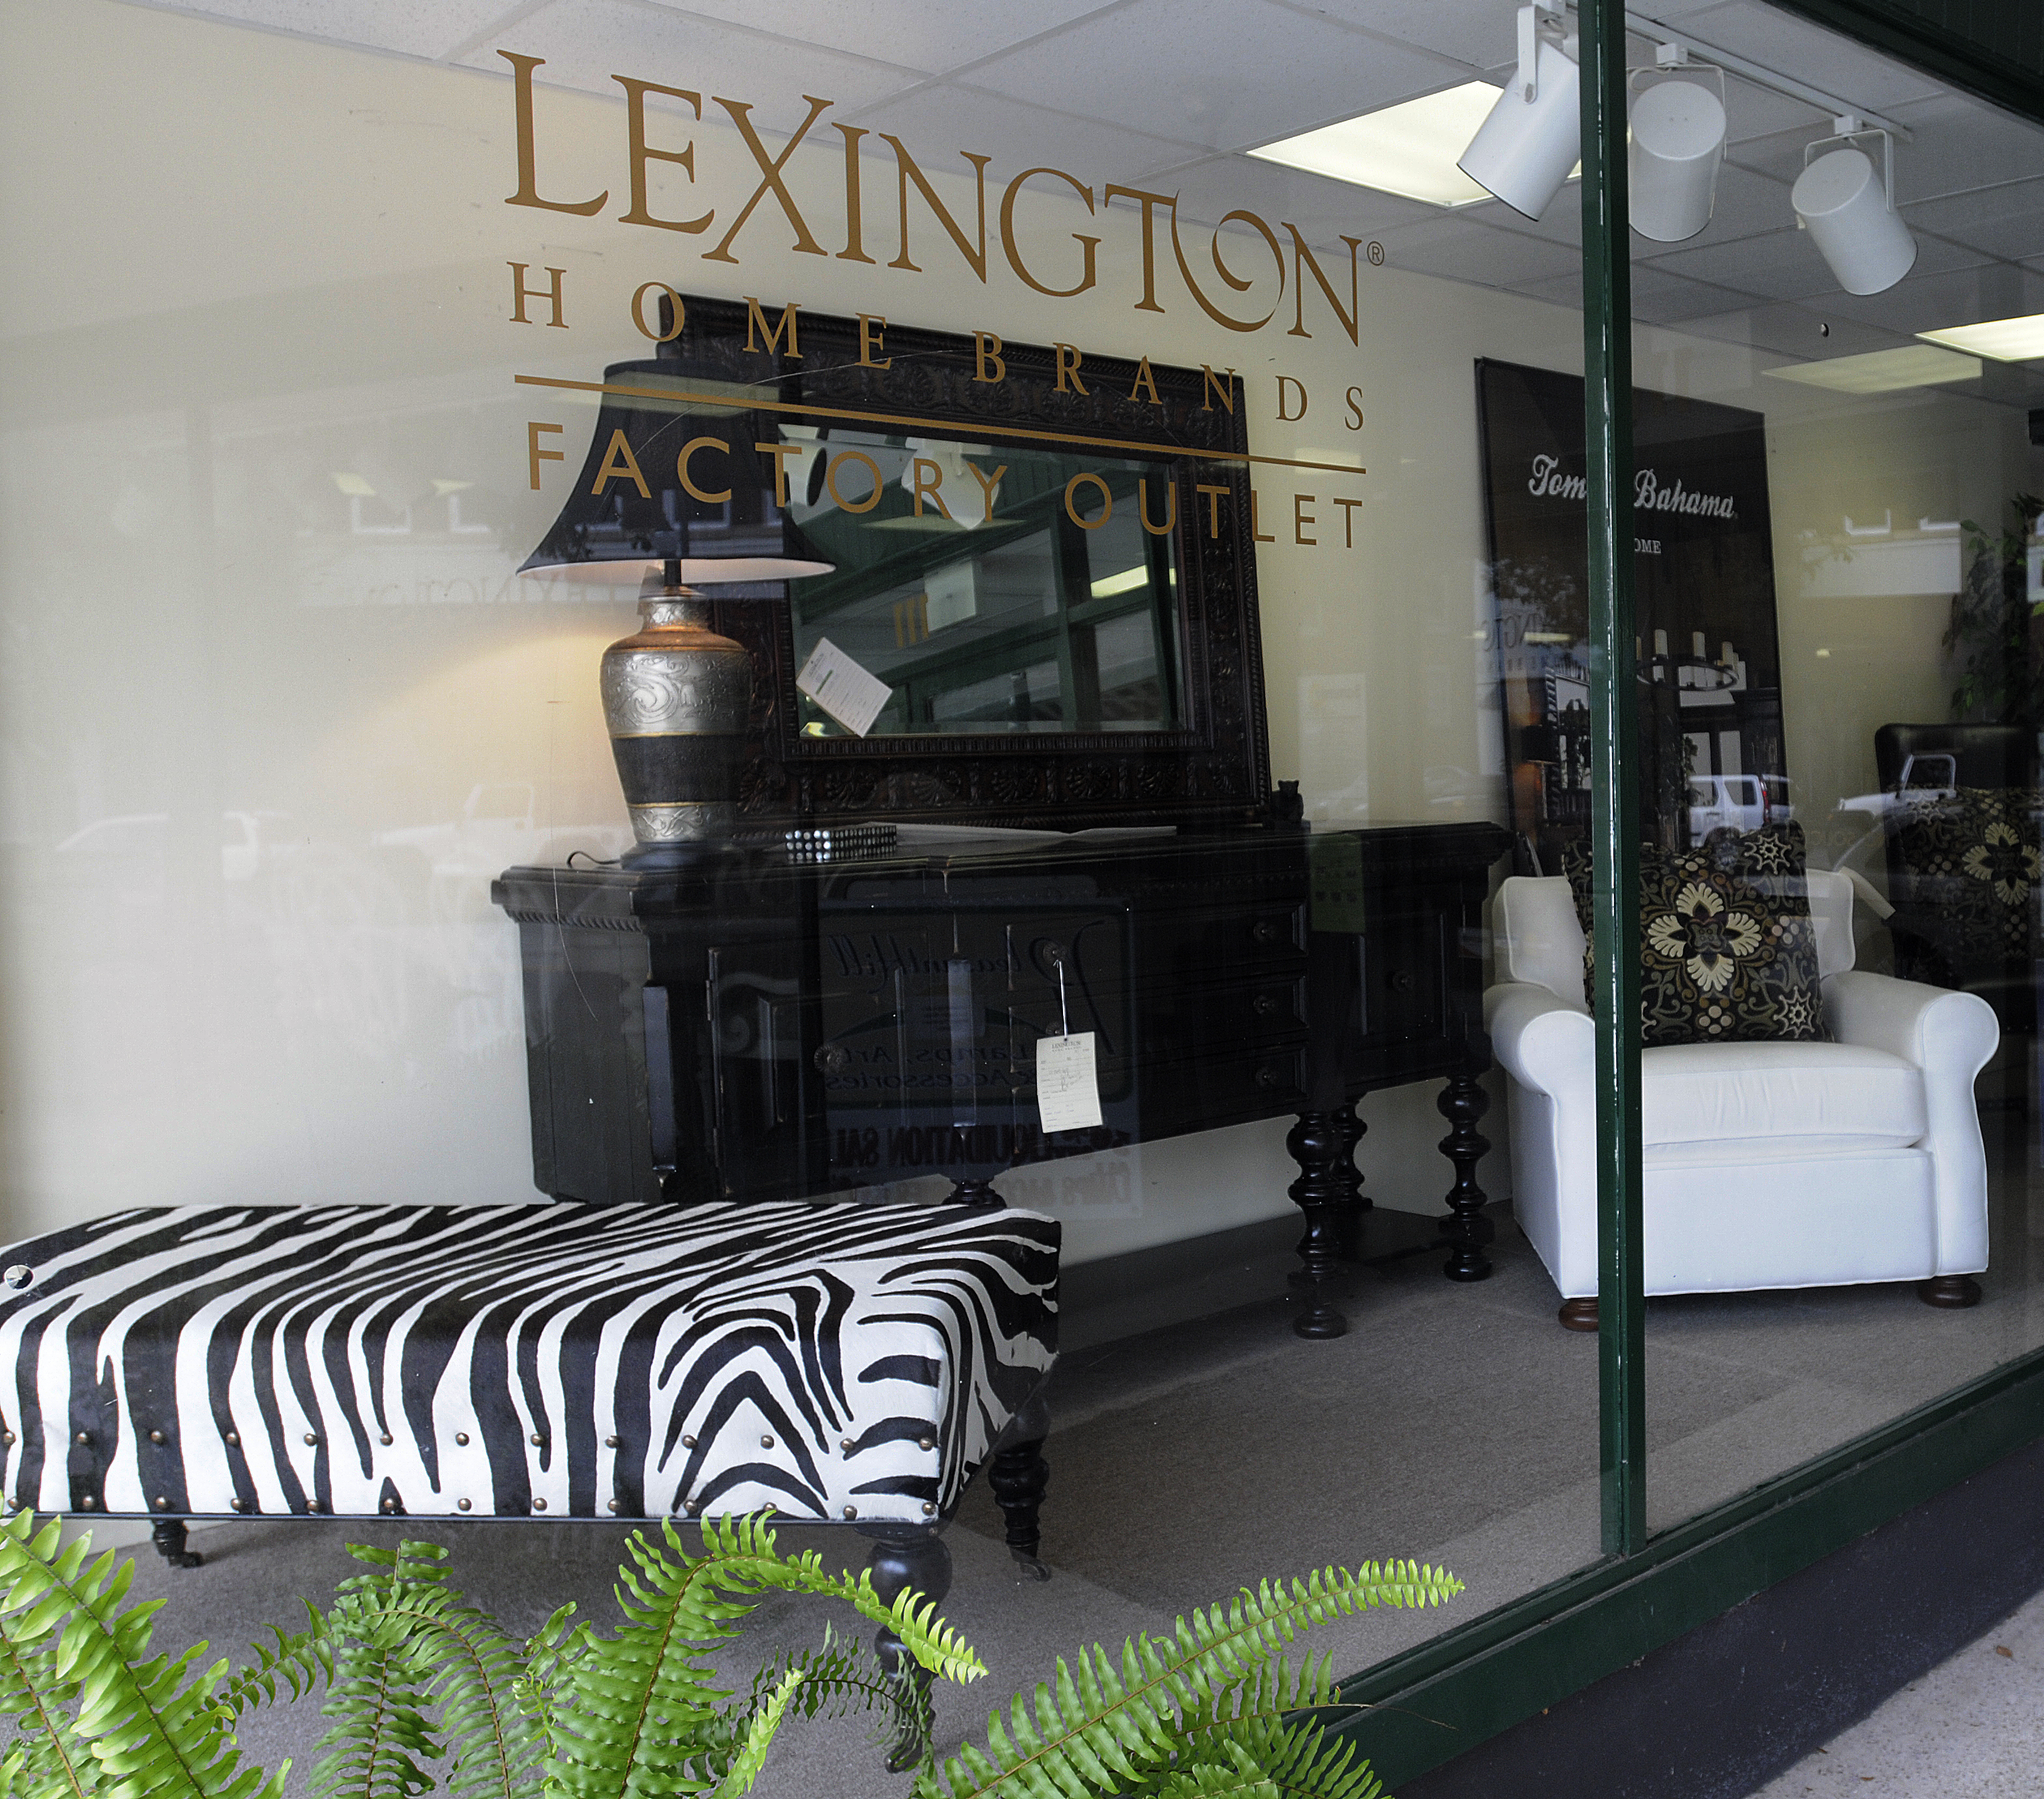 Lexington Home Brands Factory Outlet Visitnc Com